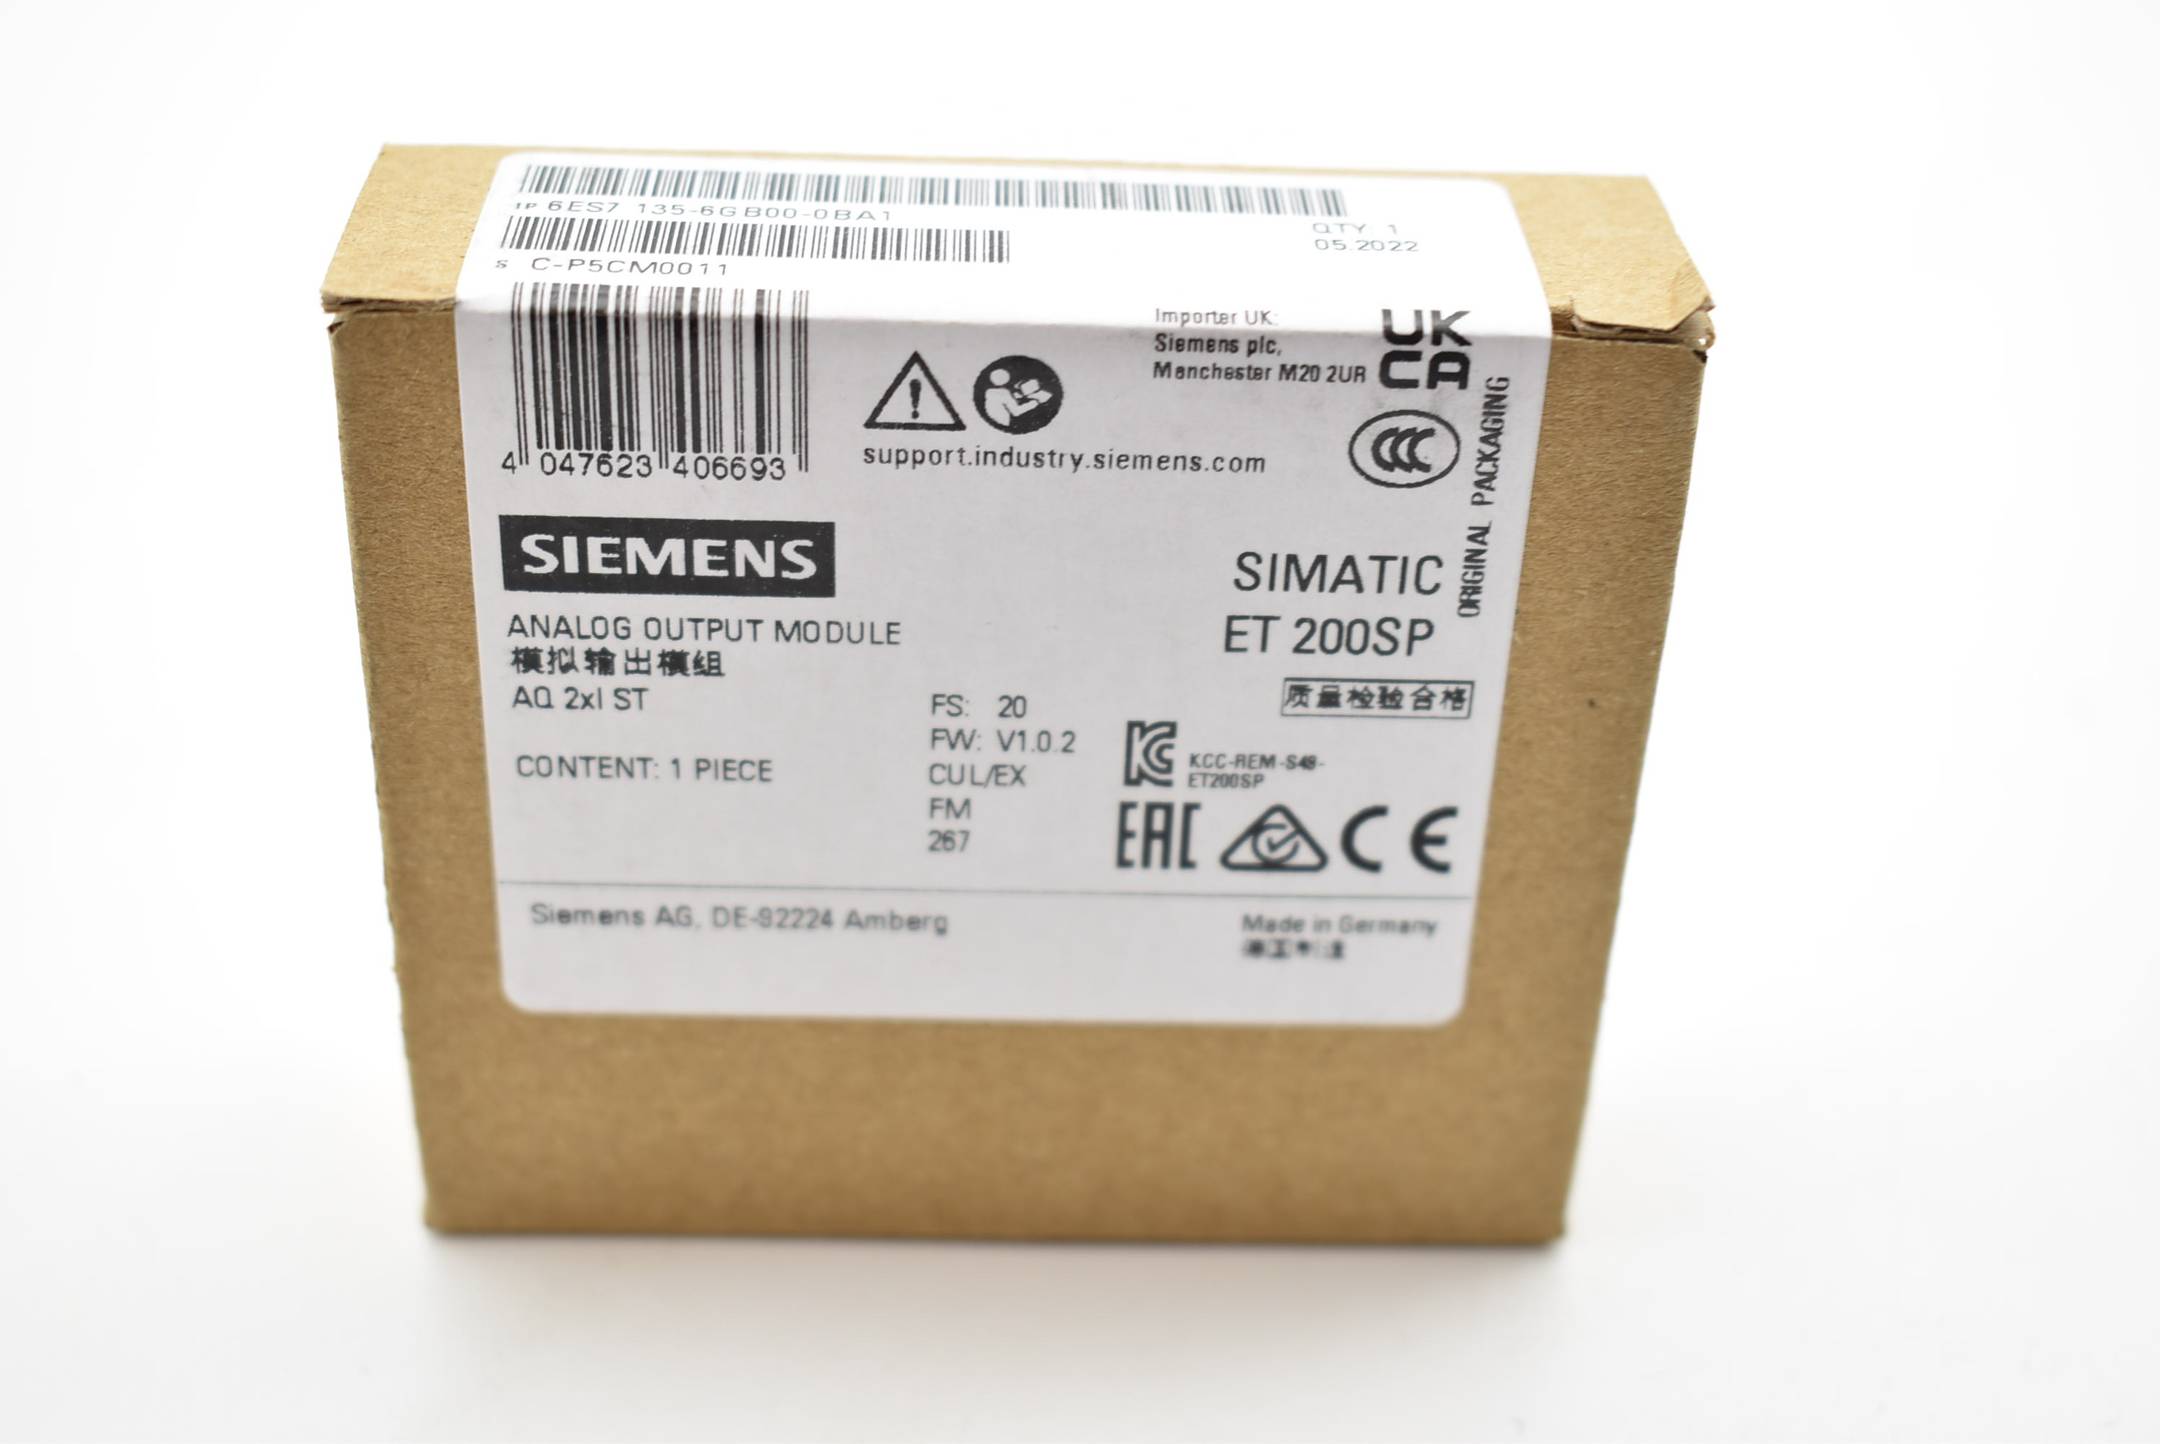 Siemens simatic ET 200SP 6ES7 135-6GB00-0BA1 ( 6ES7135-6GB00-0BA1 ) FS.20